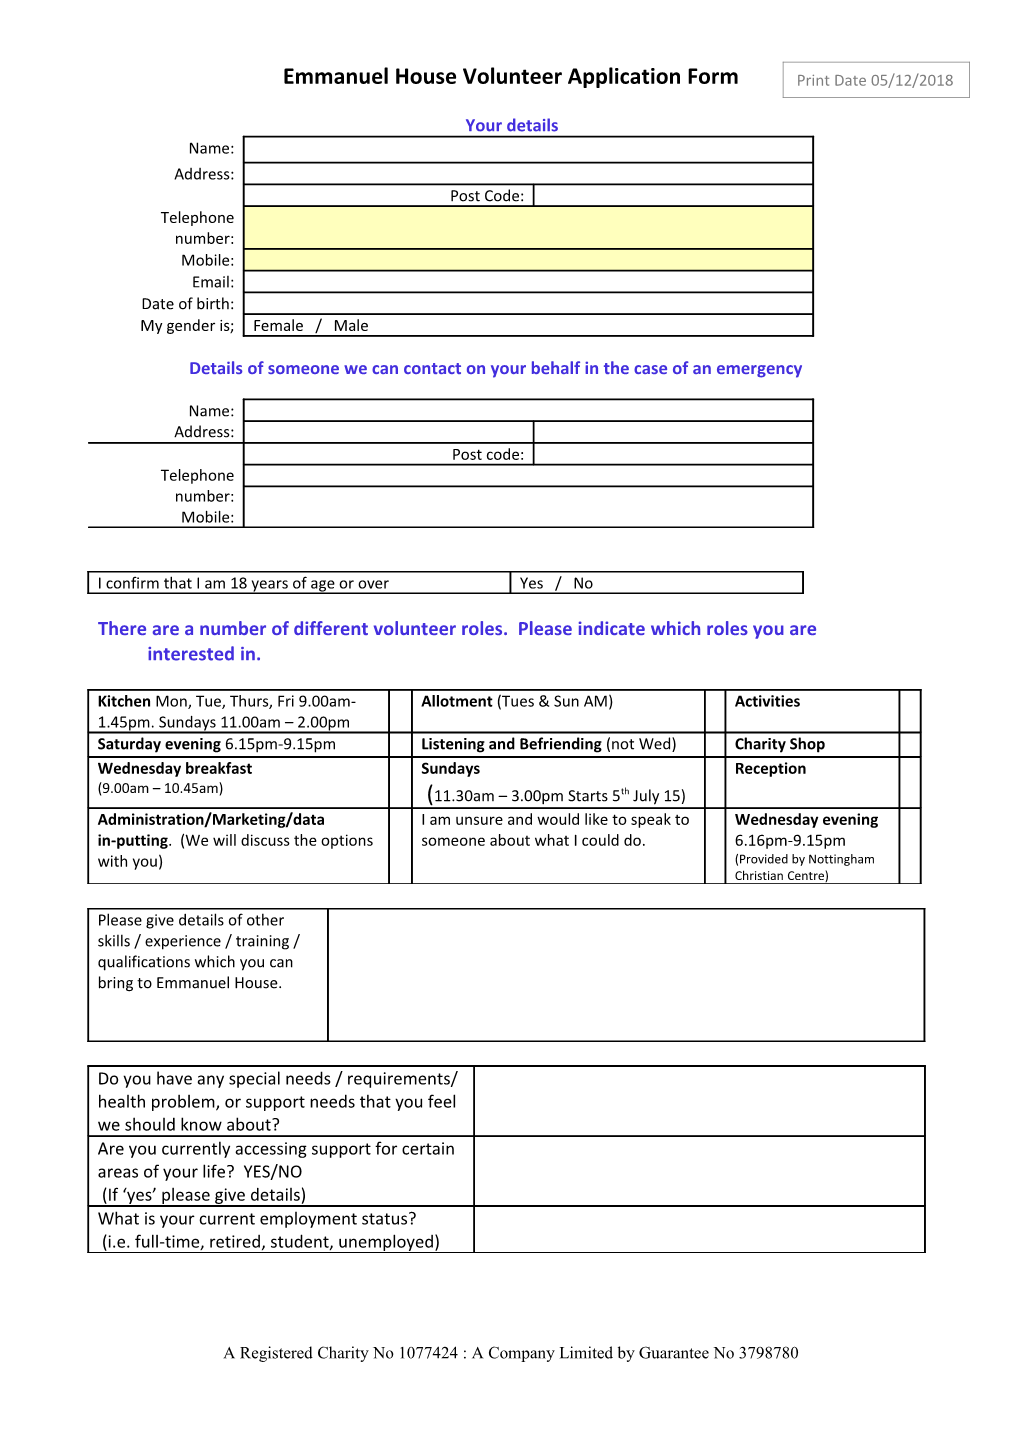 Emmanuel House Volunteer Application Form